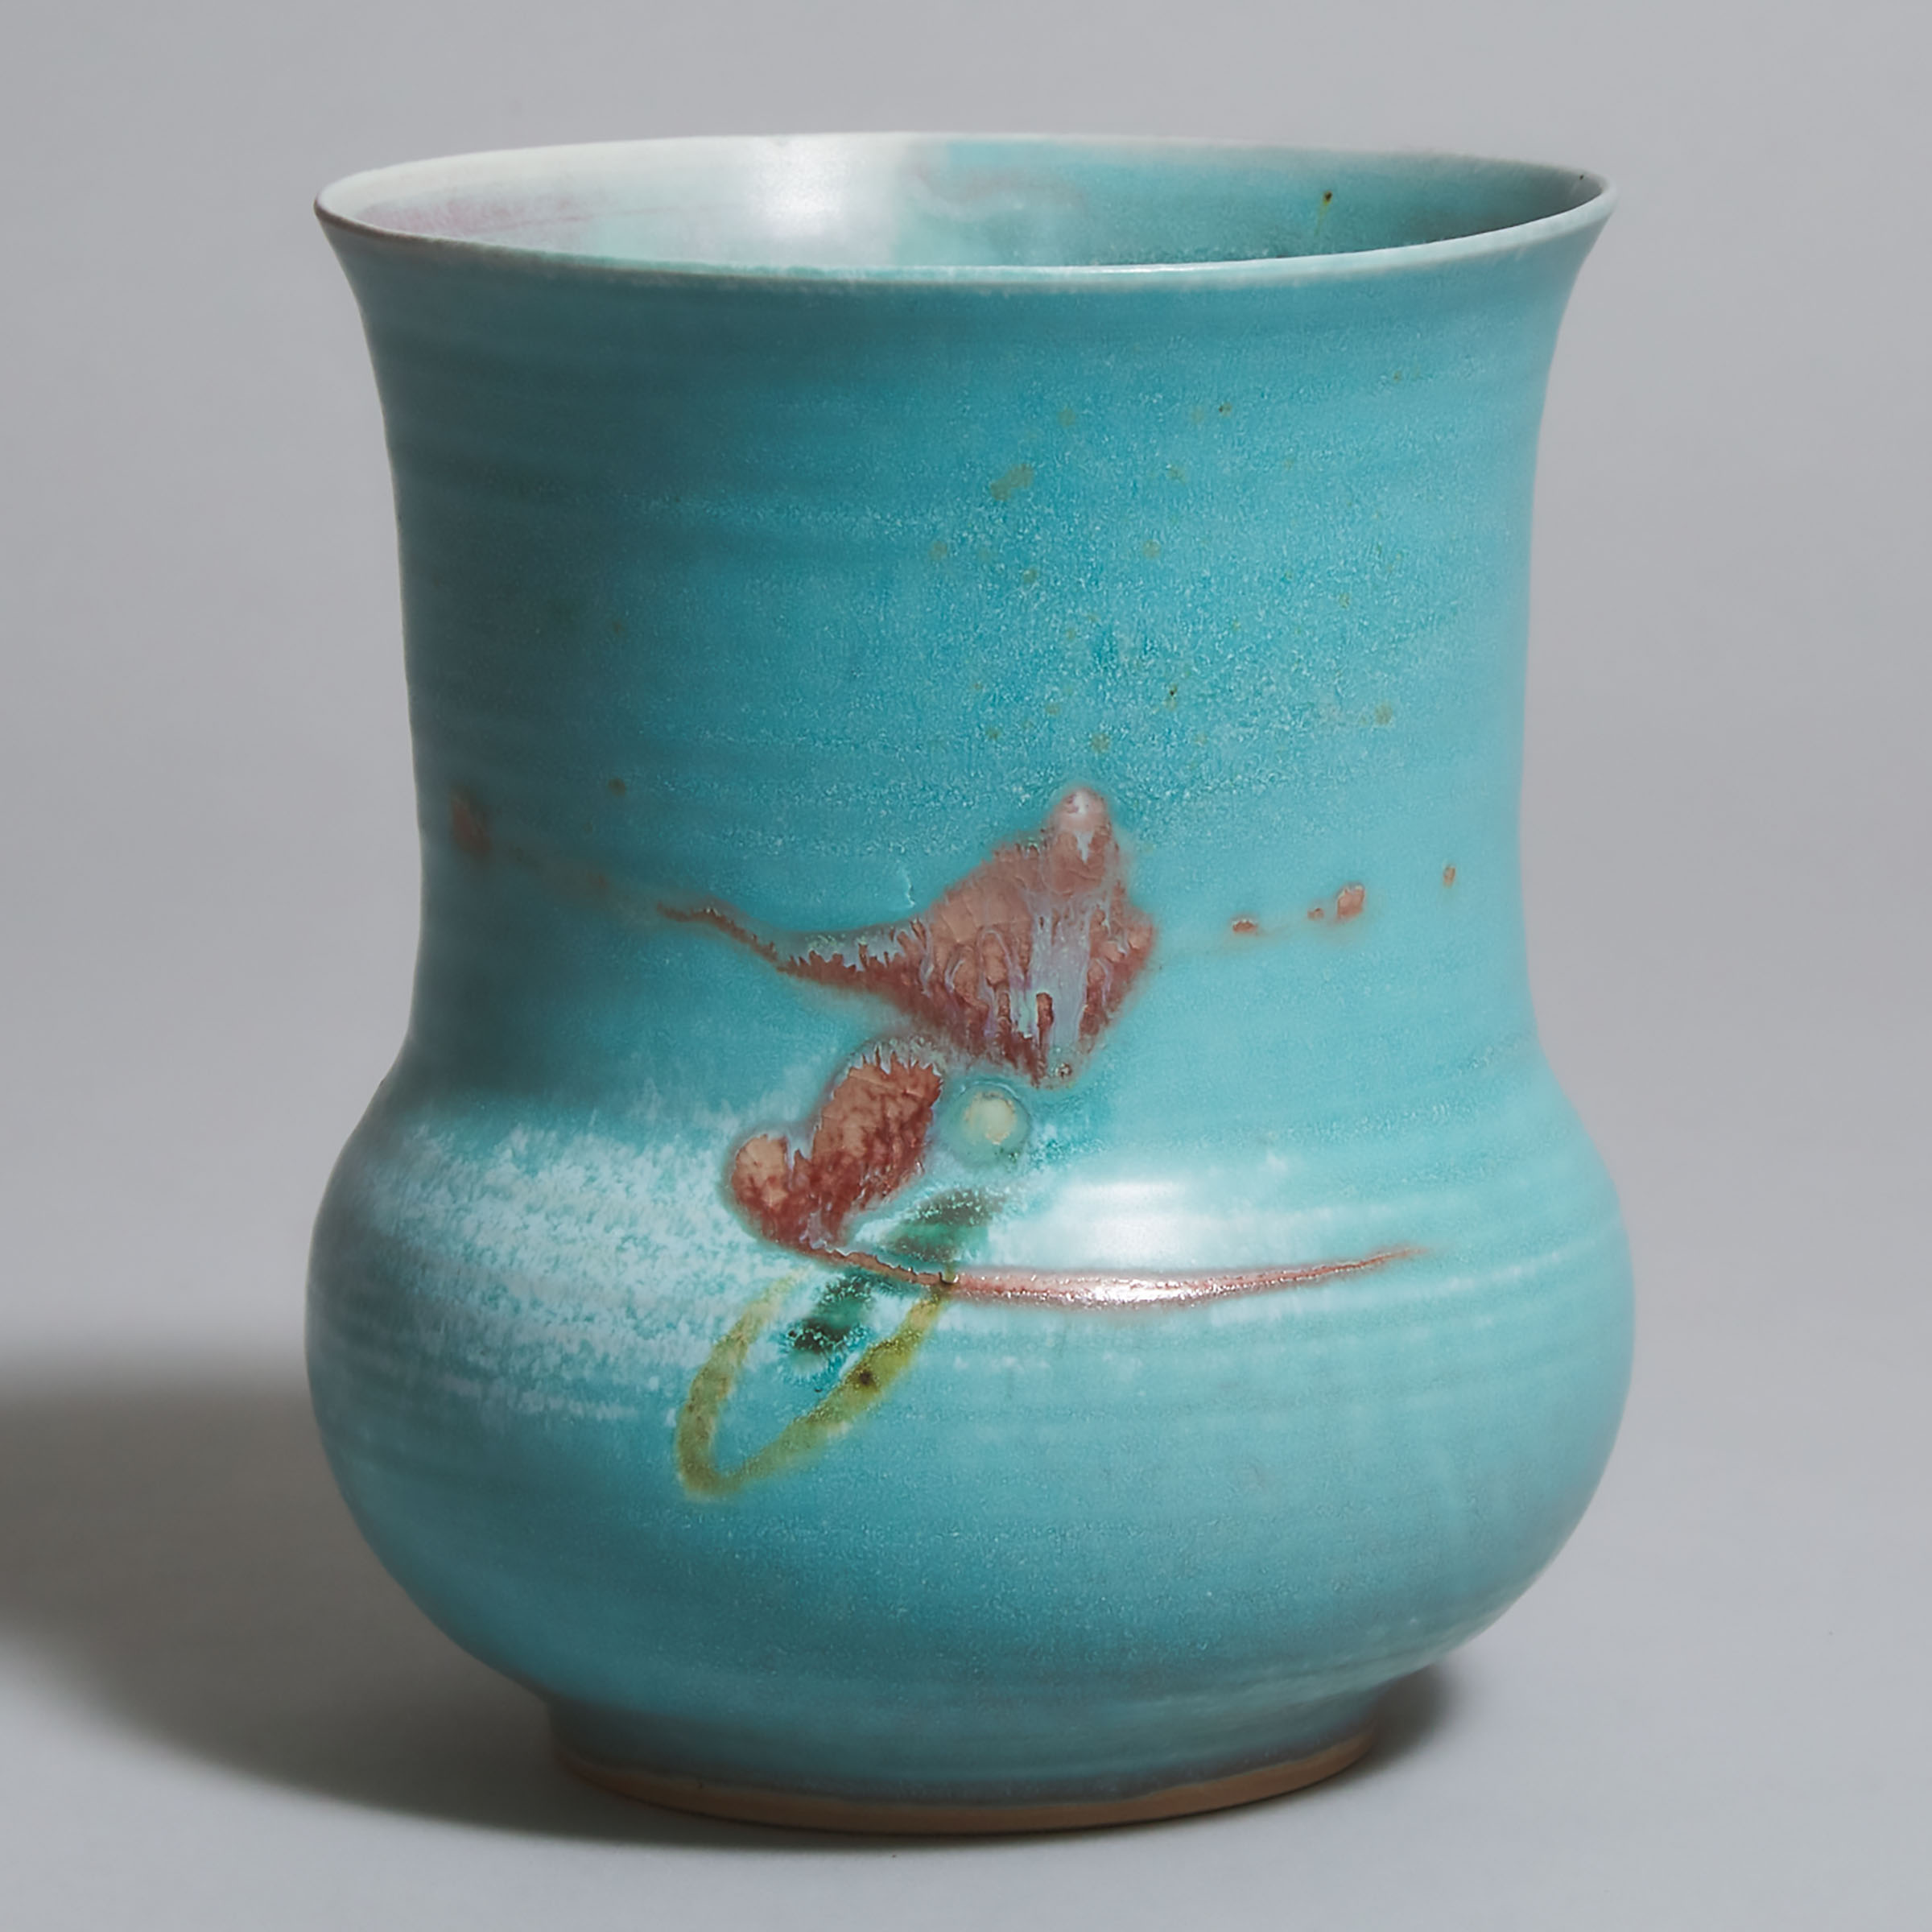 Kayo O'Young (Canadian, b.1950), Light Blue Glazed Vase, 2001